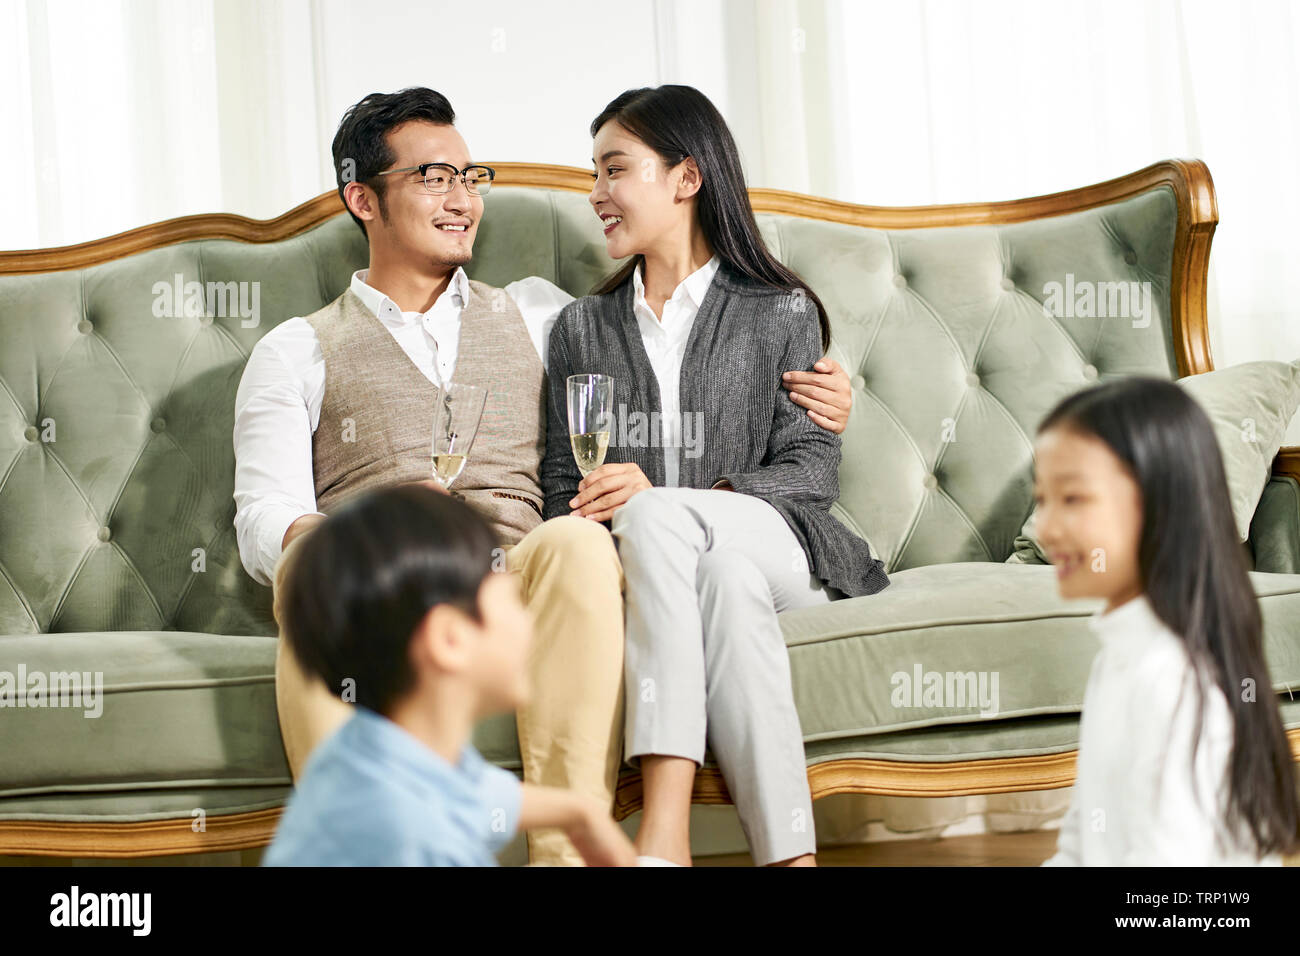 Asiatische Bruder und Schwester saß auf dem Teppich spielen, während die Eltern im Hintergrund für Chats, auf die Eltern konzentrieren. Stockfoto